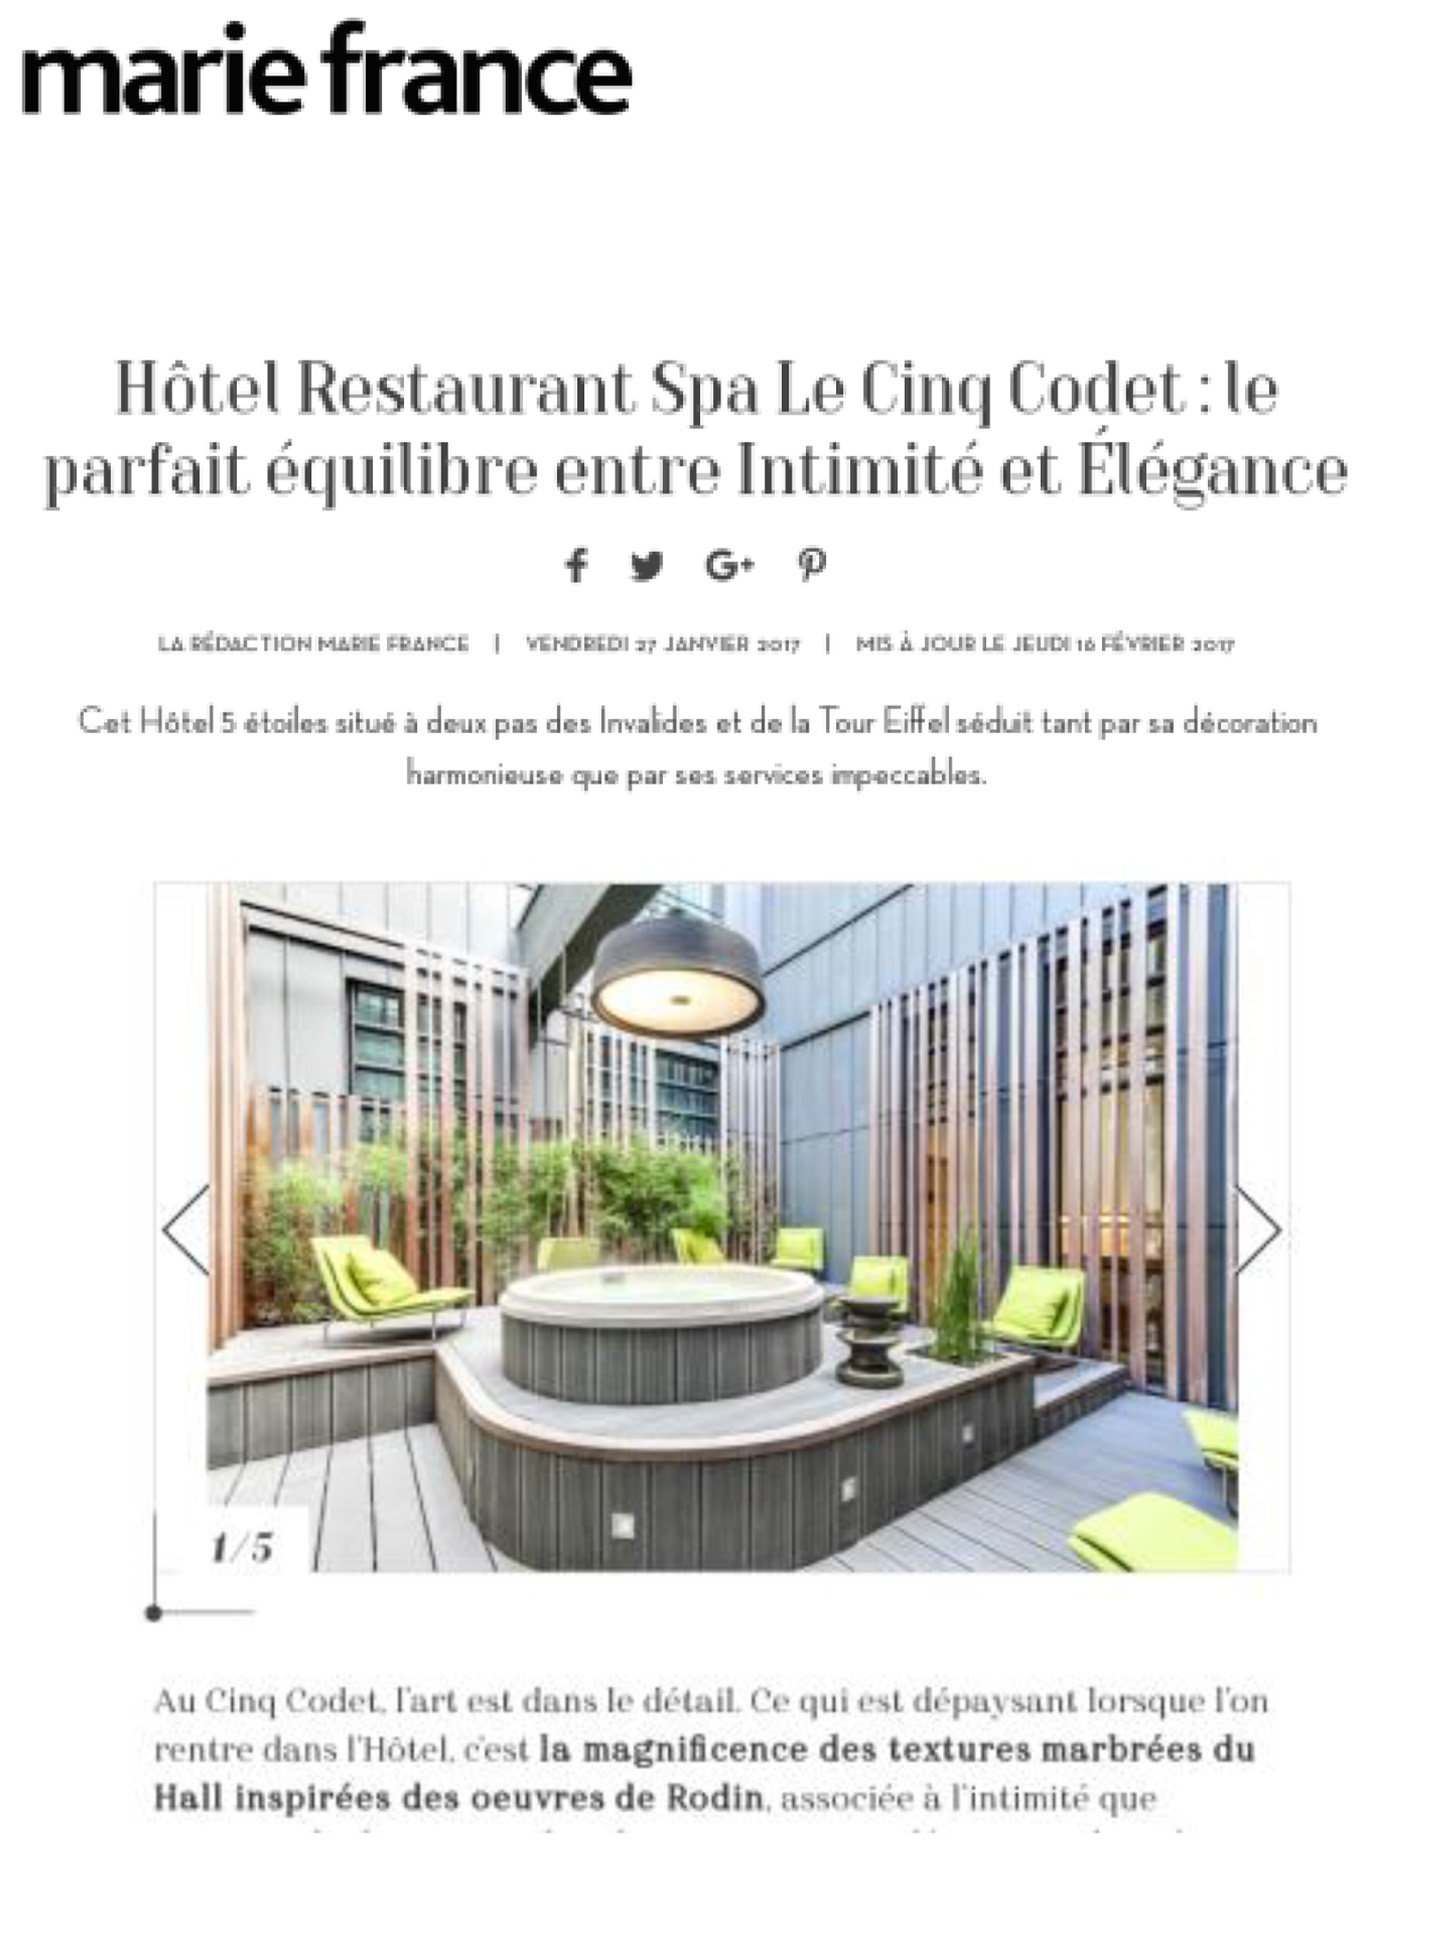 Article sur le Cinq Codet réalisé par le studio jean-Philippe Nuel dans le magazine marie france, nouvel hotel lifestyle, architecture d'intérieur de luxe, paris centre, hotel de luxe français